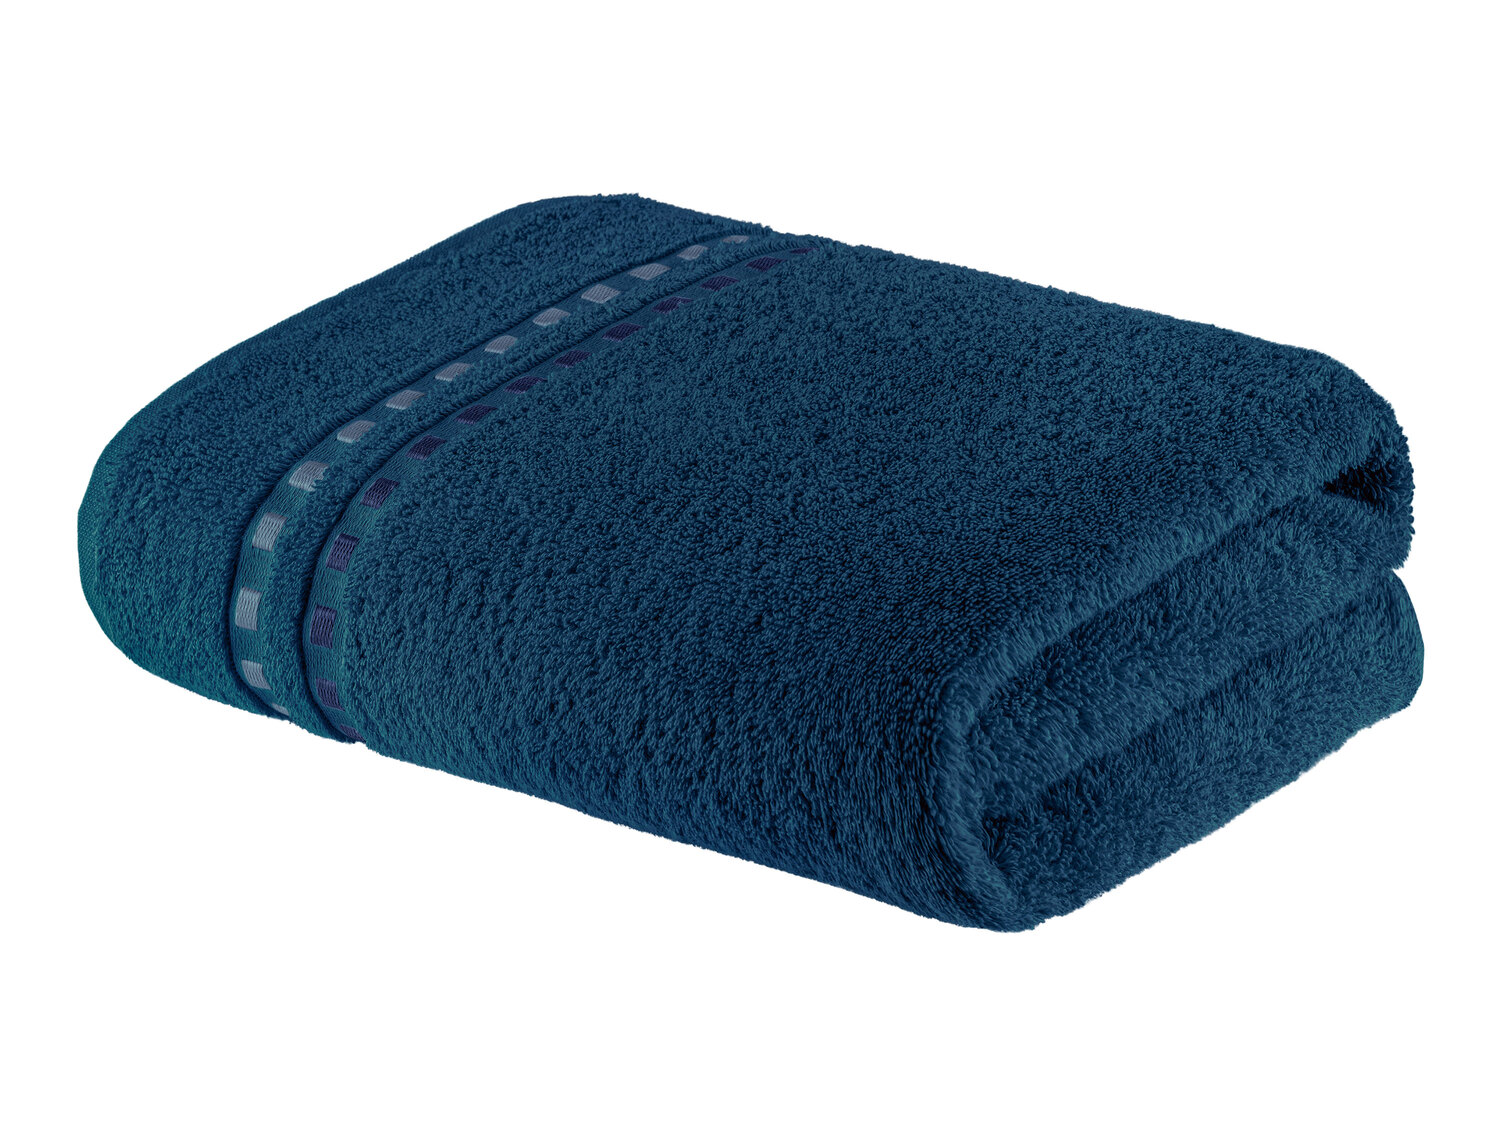 Ręcznik 70 x 140 cm , cena 21,99 PLN 
- 450 g/m2
- 100% bawełny
- miękki i ...